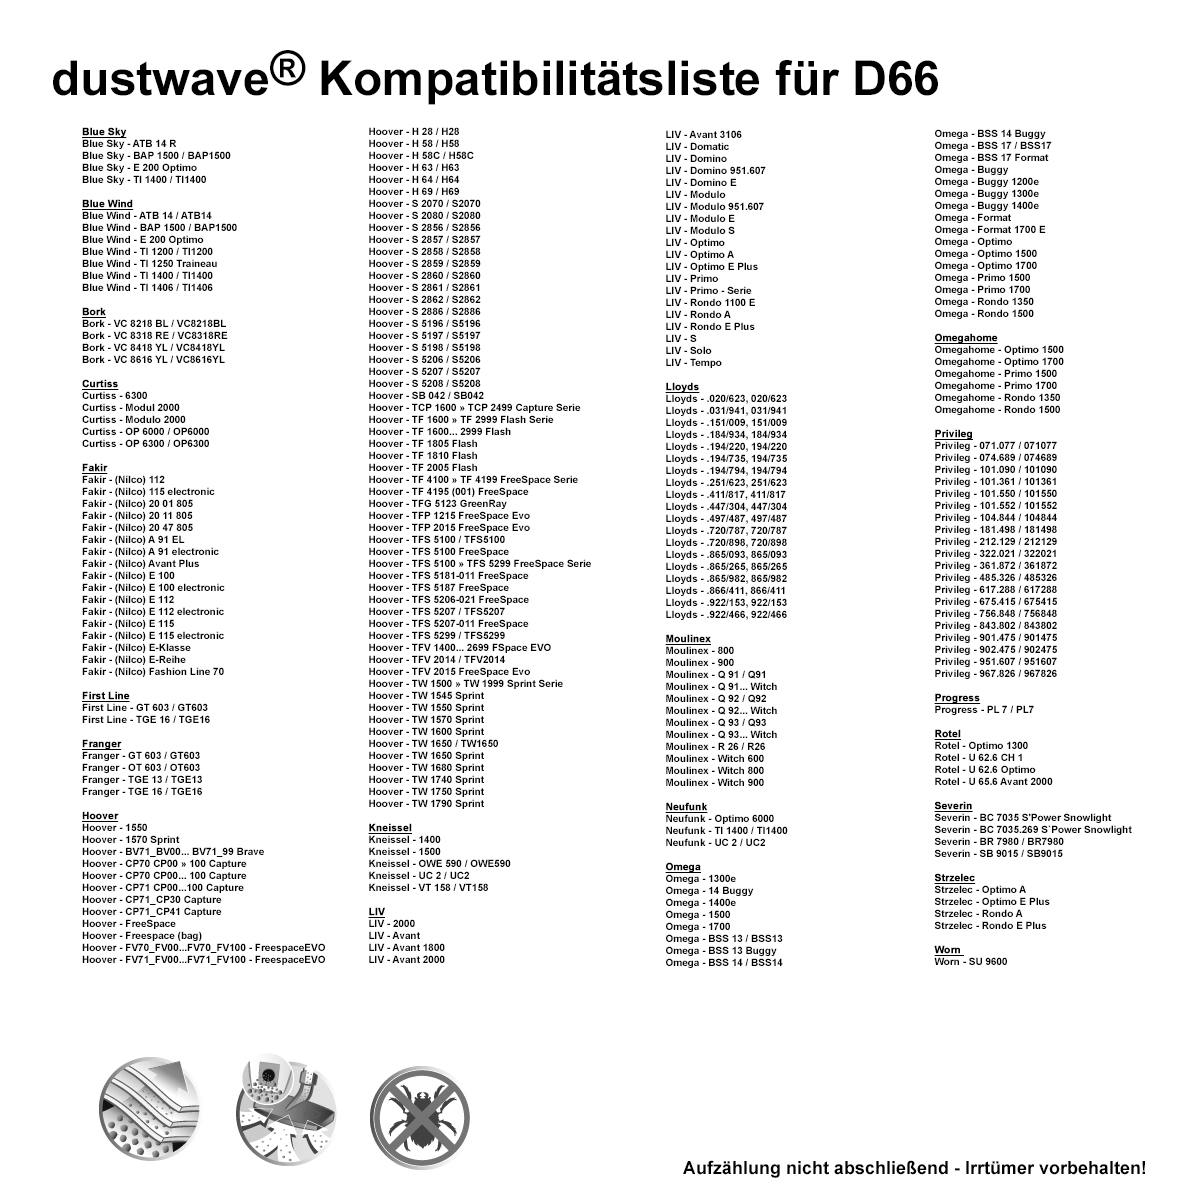 Dustwave® 10 Staubsaugerbeutel für Hoover TW1570 Sprint - hocheffizient, mehrlagiges Mikrovlies mit Hygieneverschluss - Made in Germany